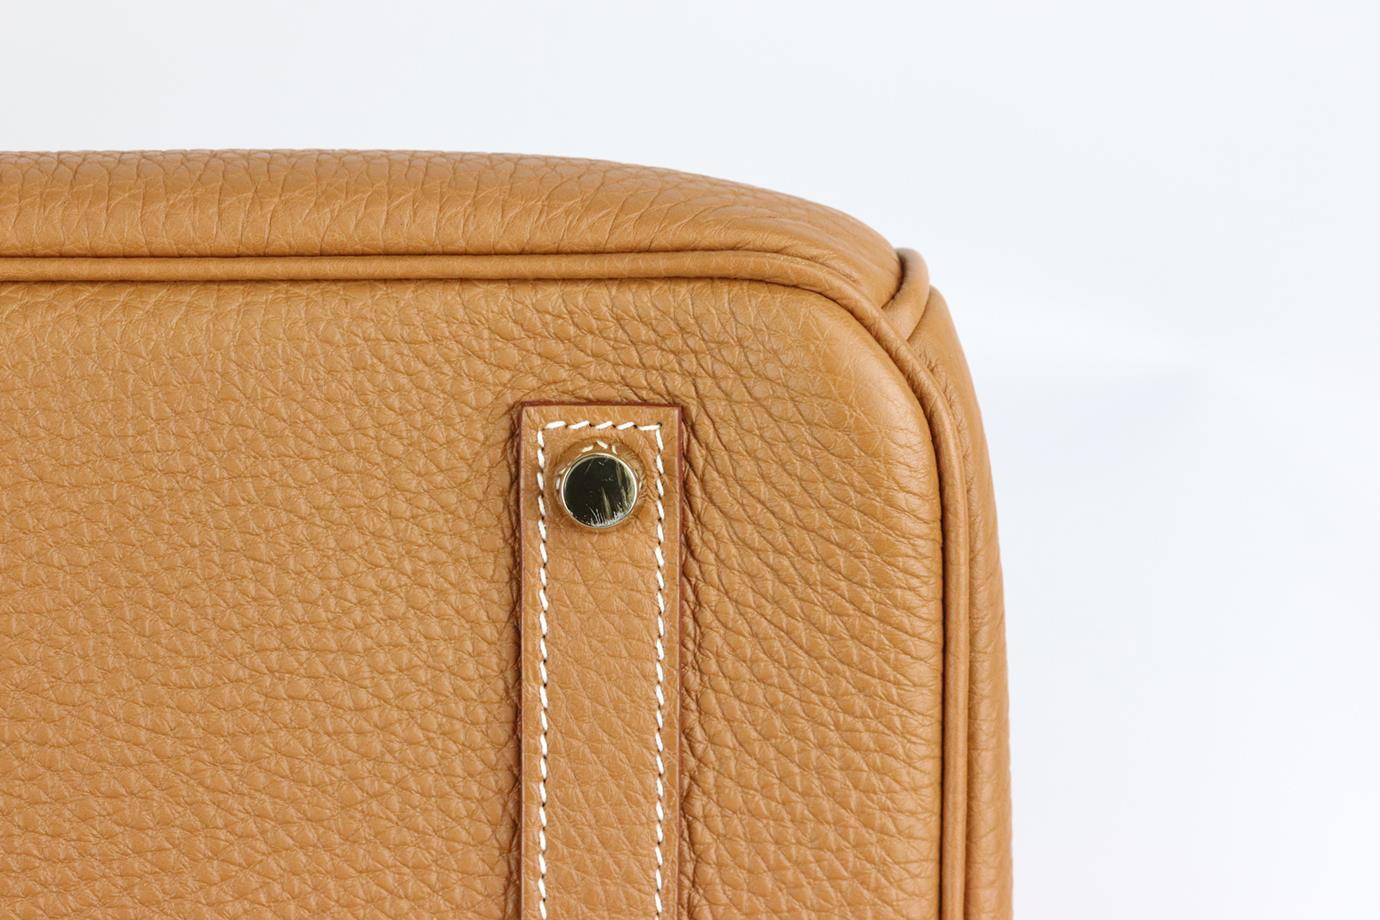 Hermès 2012 Birkin 35cm Veau Togo Leather Bag For Sale 4